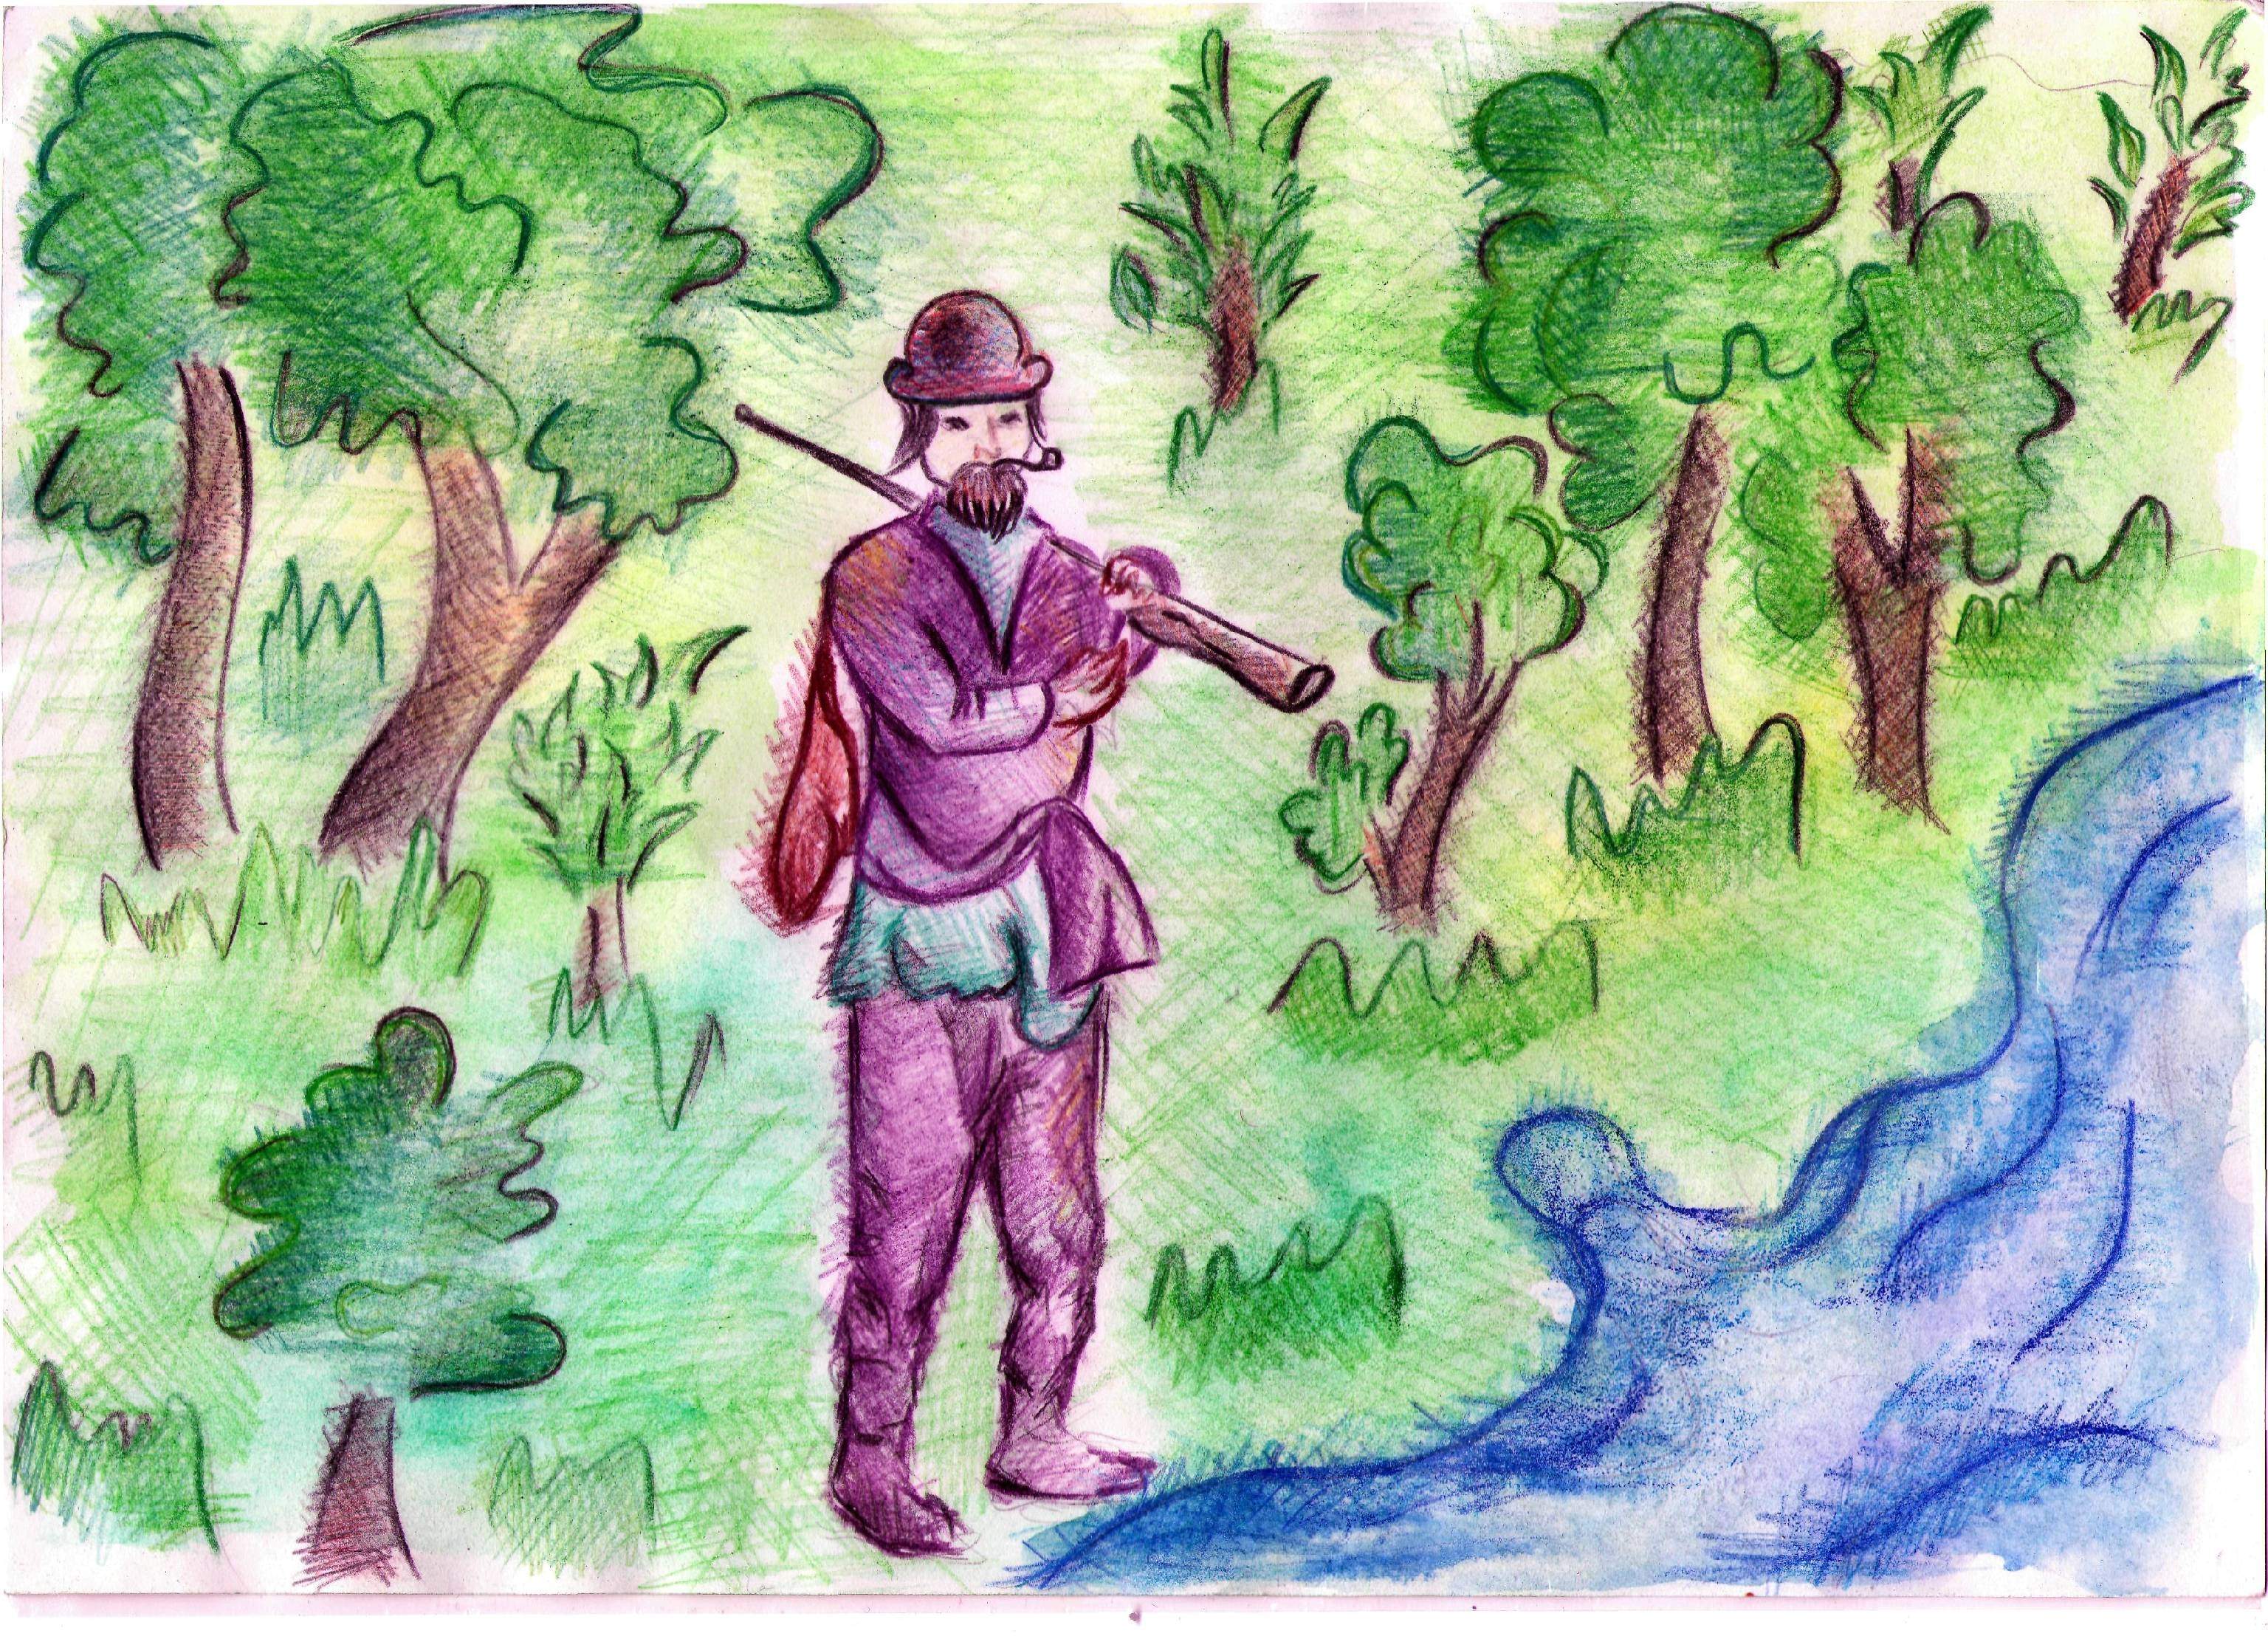 Имя главного героя васюткино озеро. Иллюстрация к рассказу Маттео Фальконе. Иллюстрация к рассказу Васюткино озеро. Маттео Фальконе рисунки к произведению. Иллюстрация Васюткино озеро 5 класс.